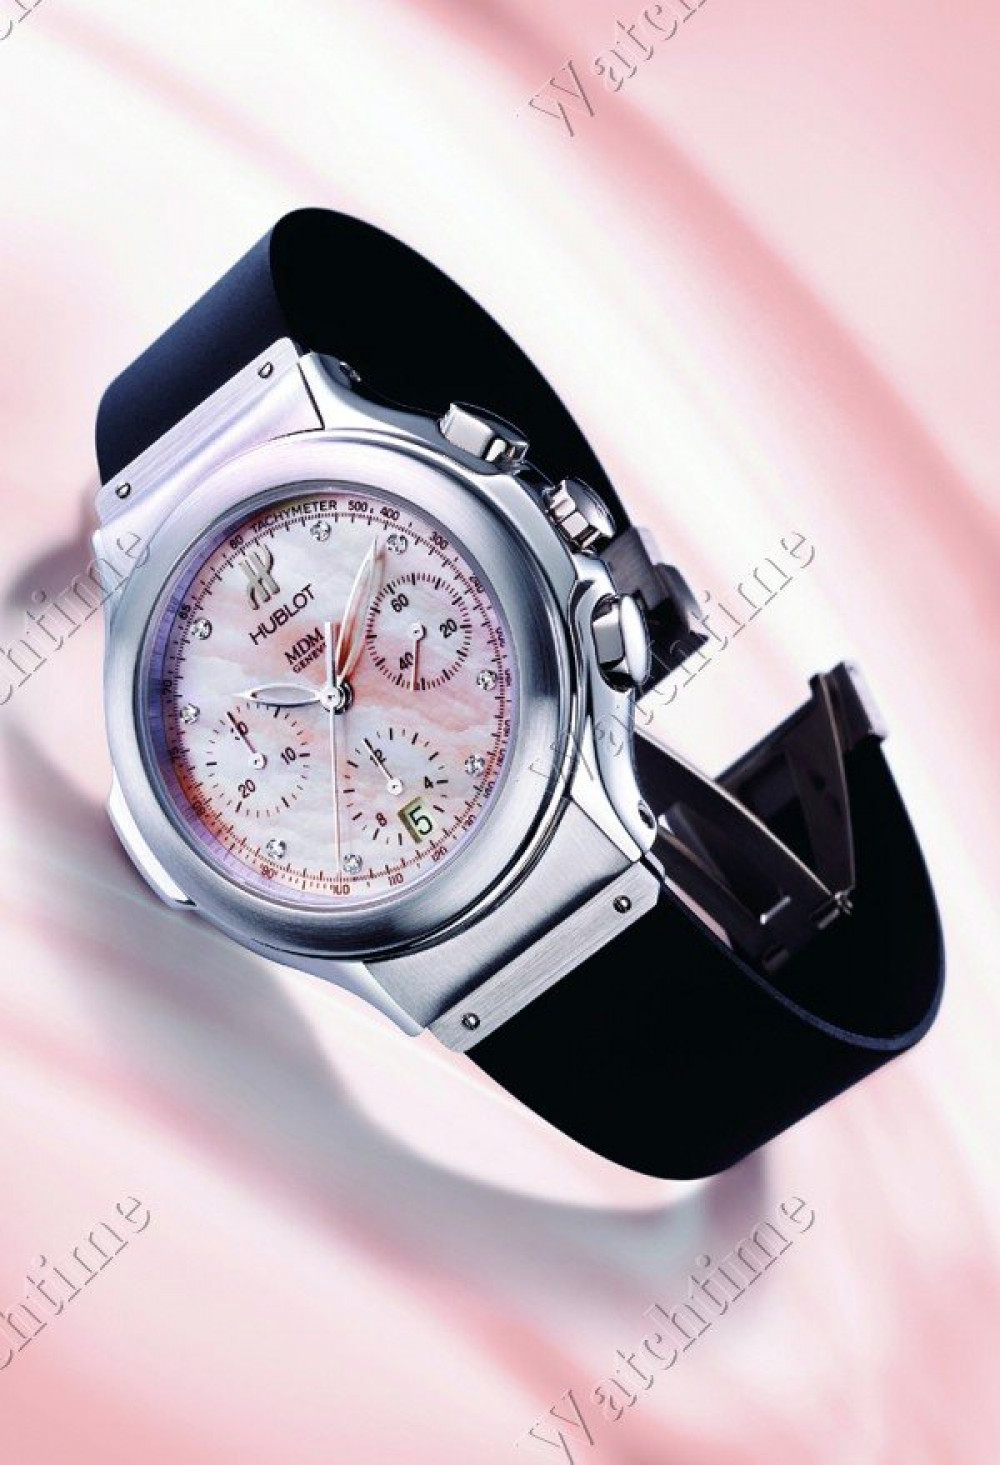 Zegarek firmy Hublot, model Chrono Lady